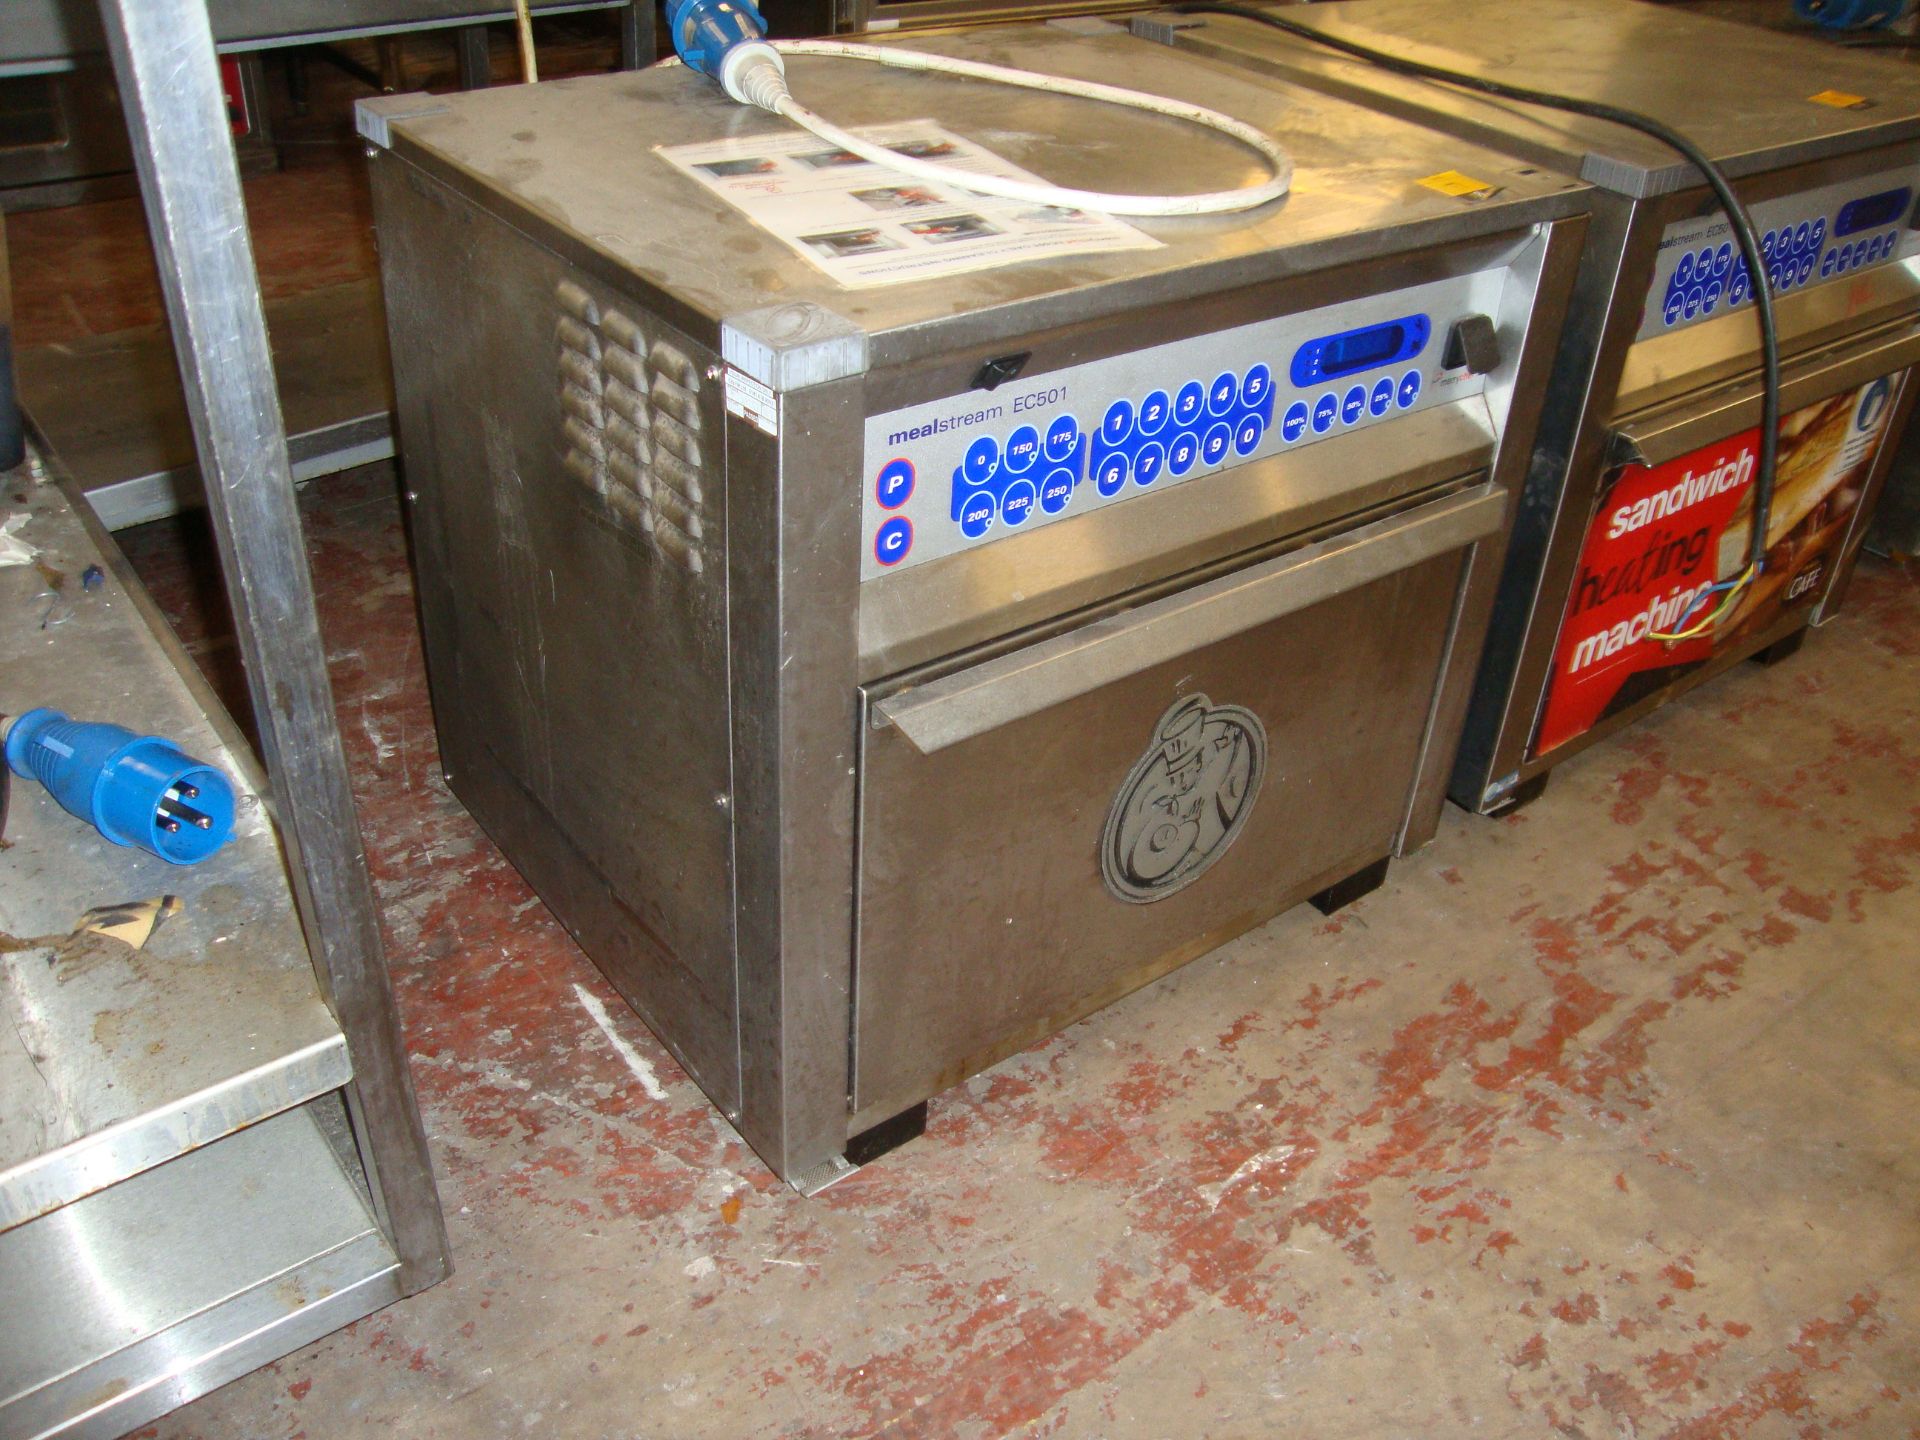 Merrychef Mealstream EC501 multifunction oven